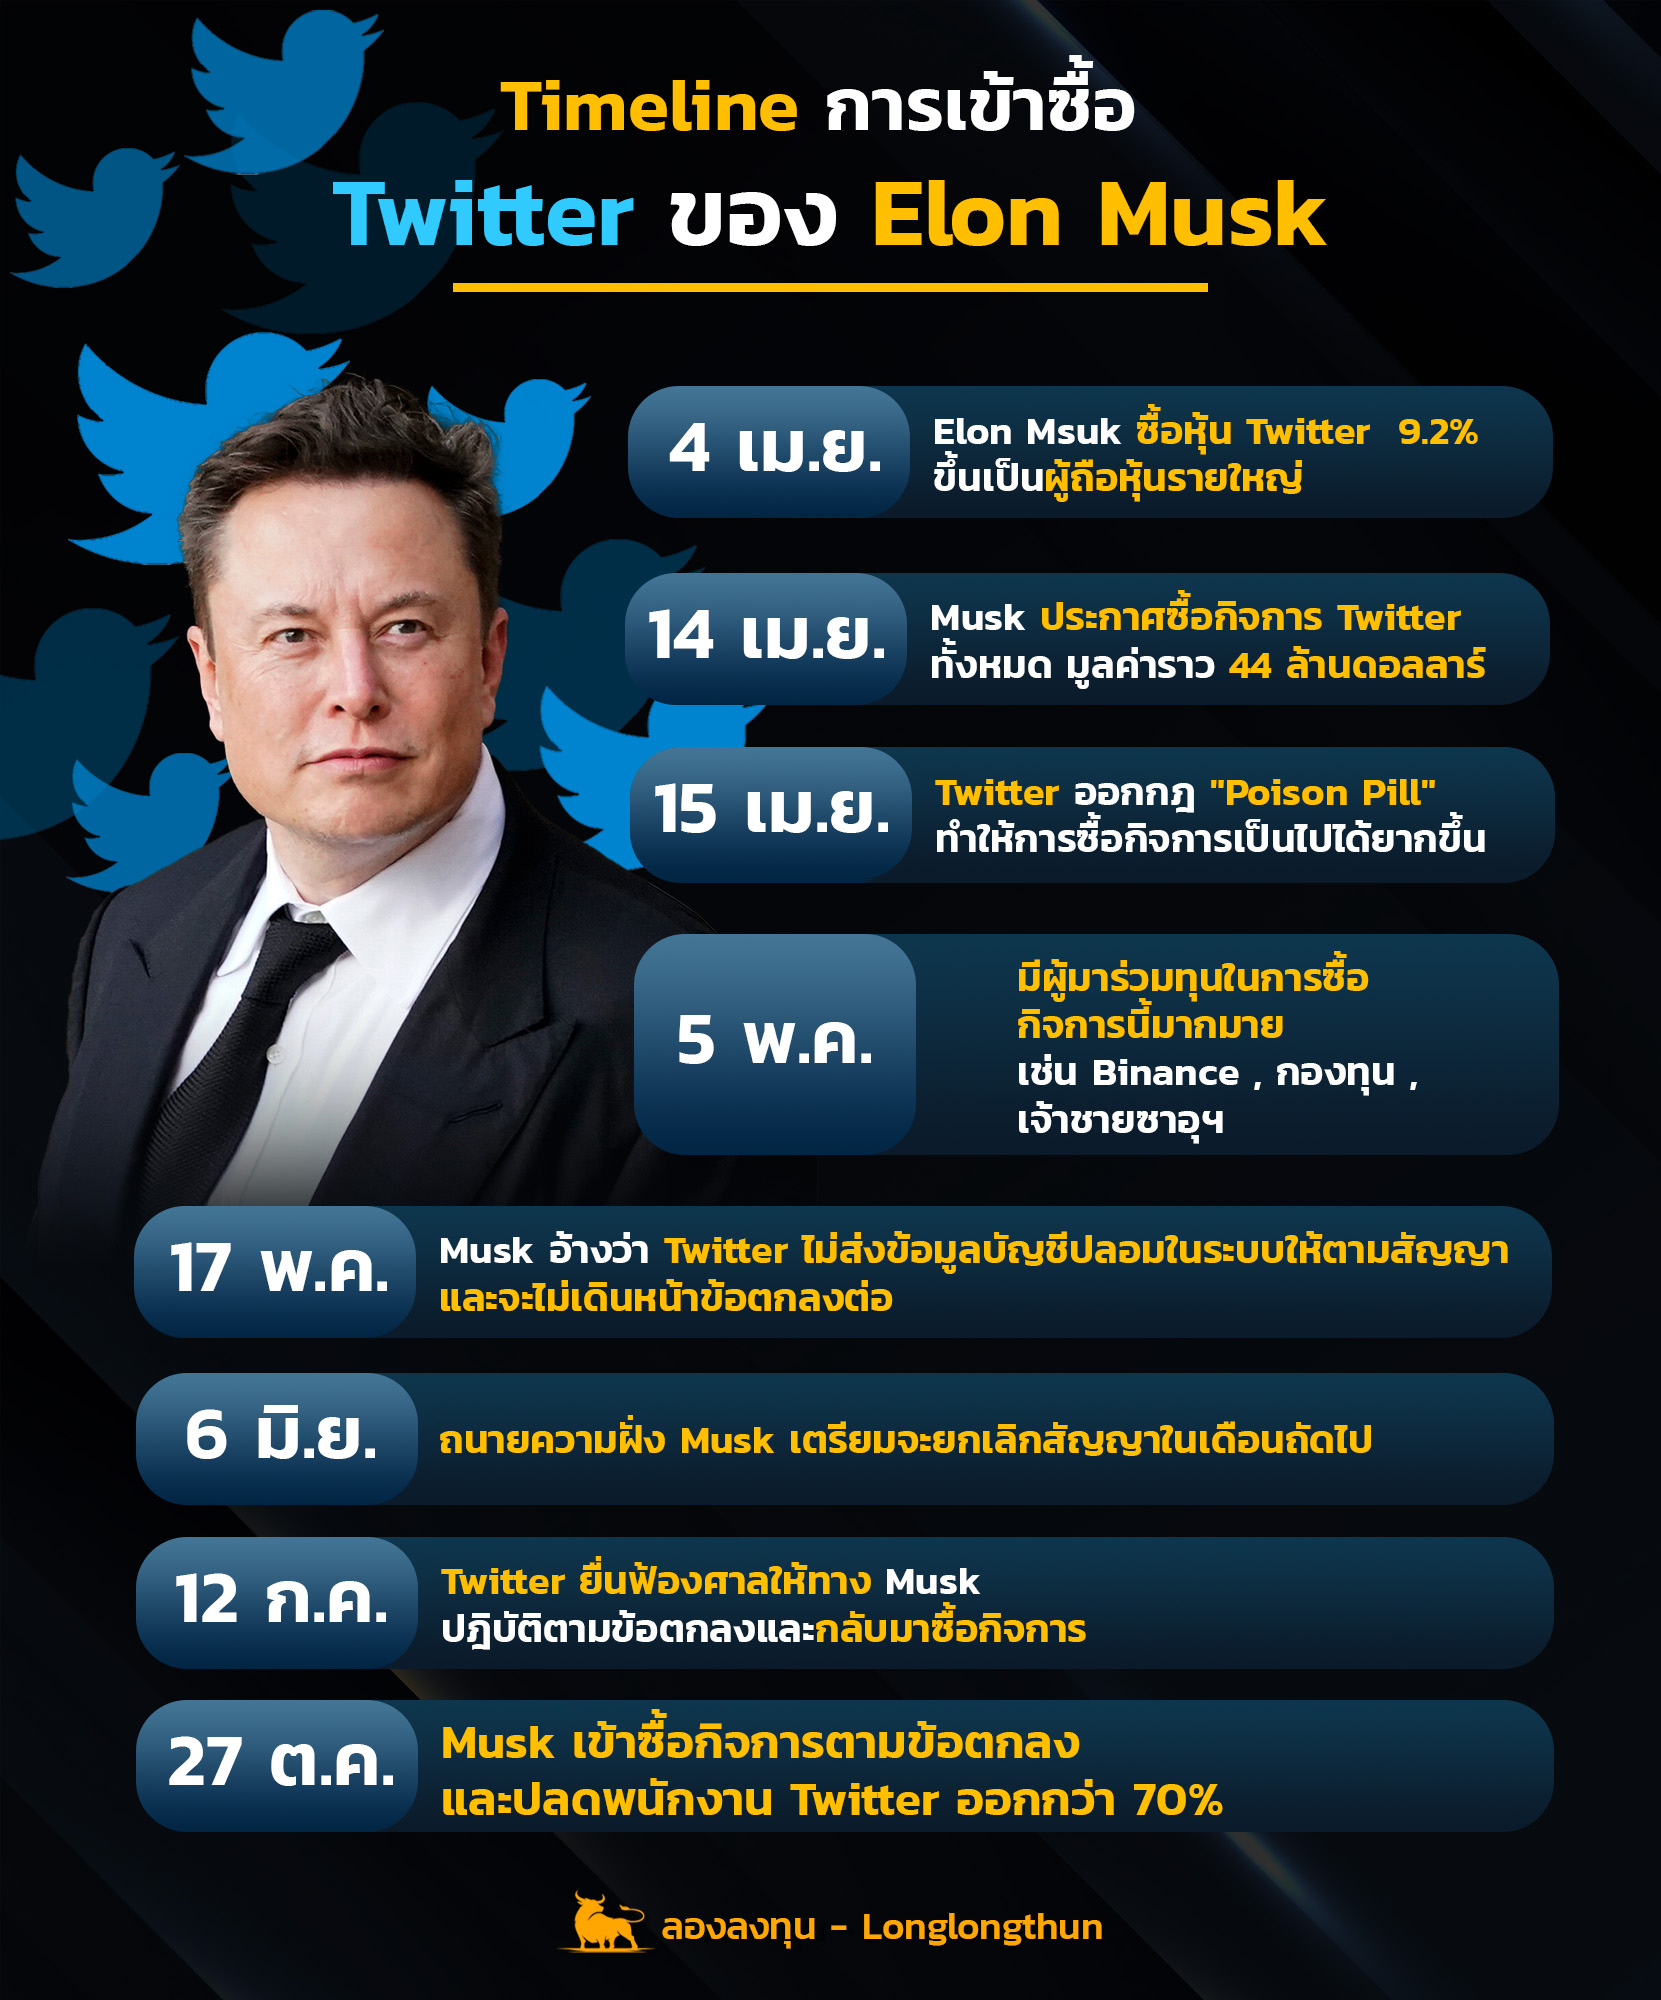 สรุป Timeline การเข้าซื้อ Twitter ของ Elon Musk